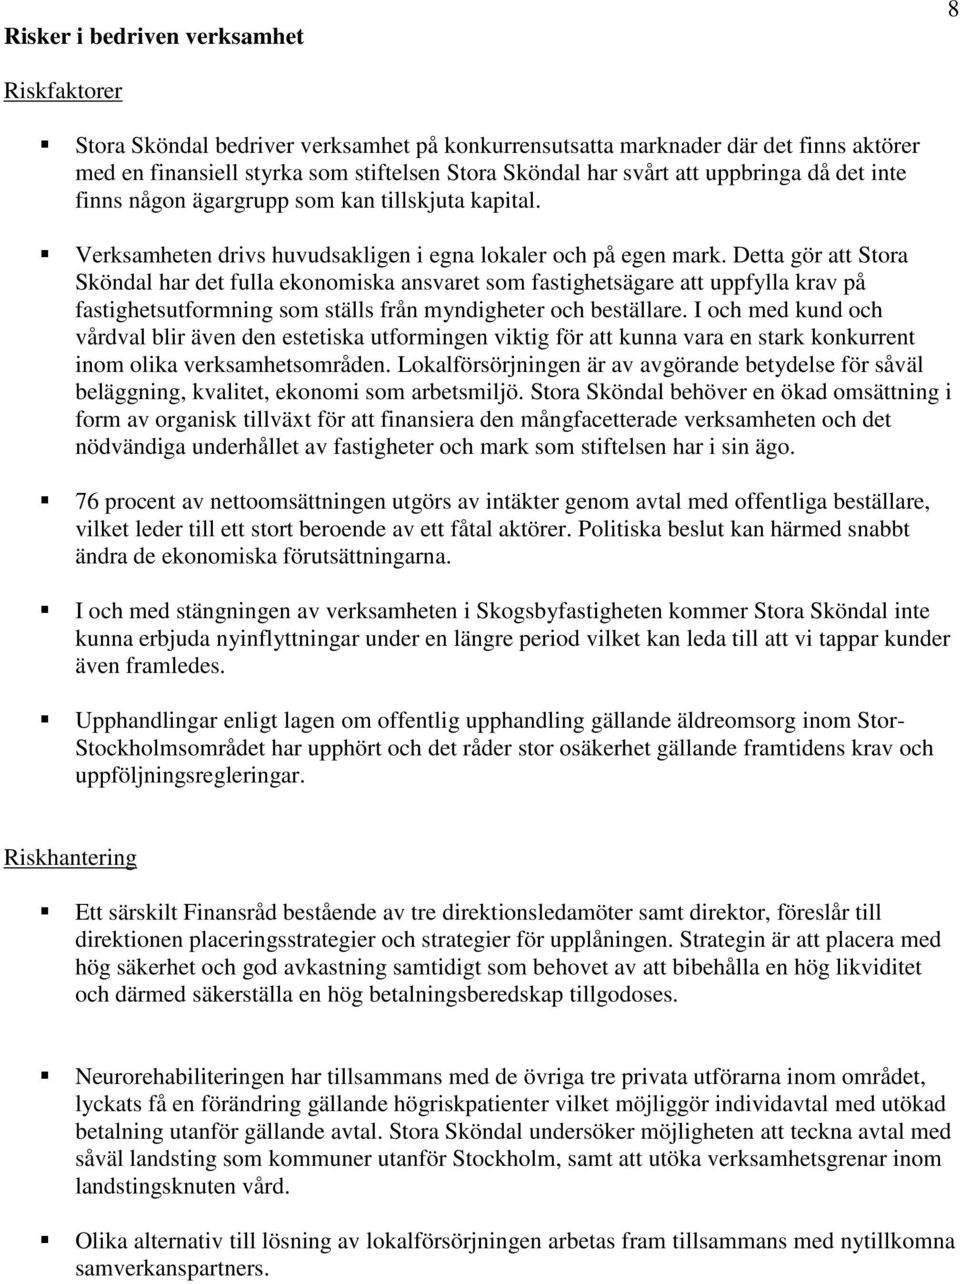 Detta gör att Stora Sköndal har det fulla ekonomiska ansvaret som fastighetsägare att uppfylla krav på fastighetsutformning som ställs från myndigheter och beställare.